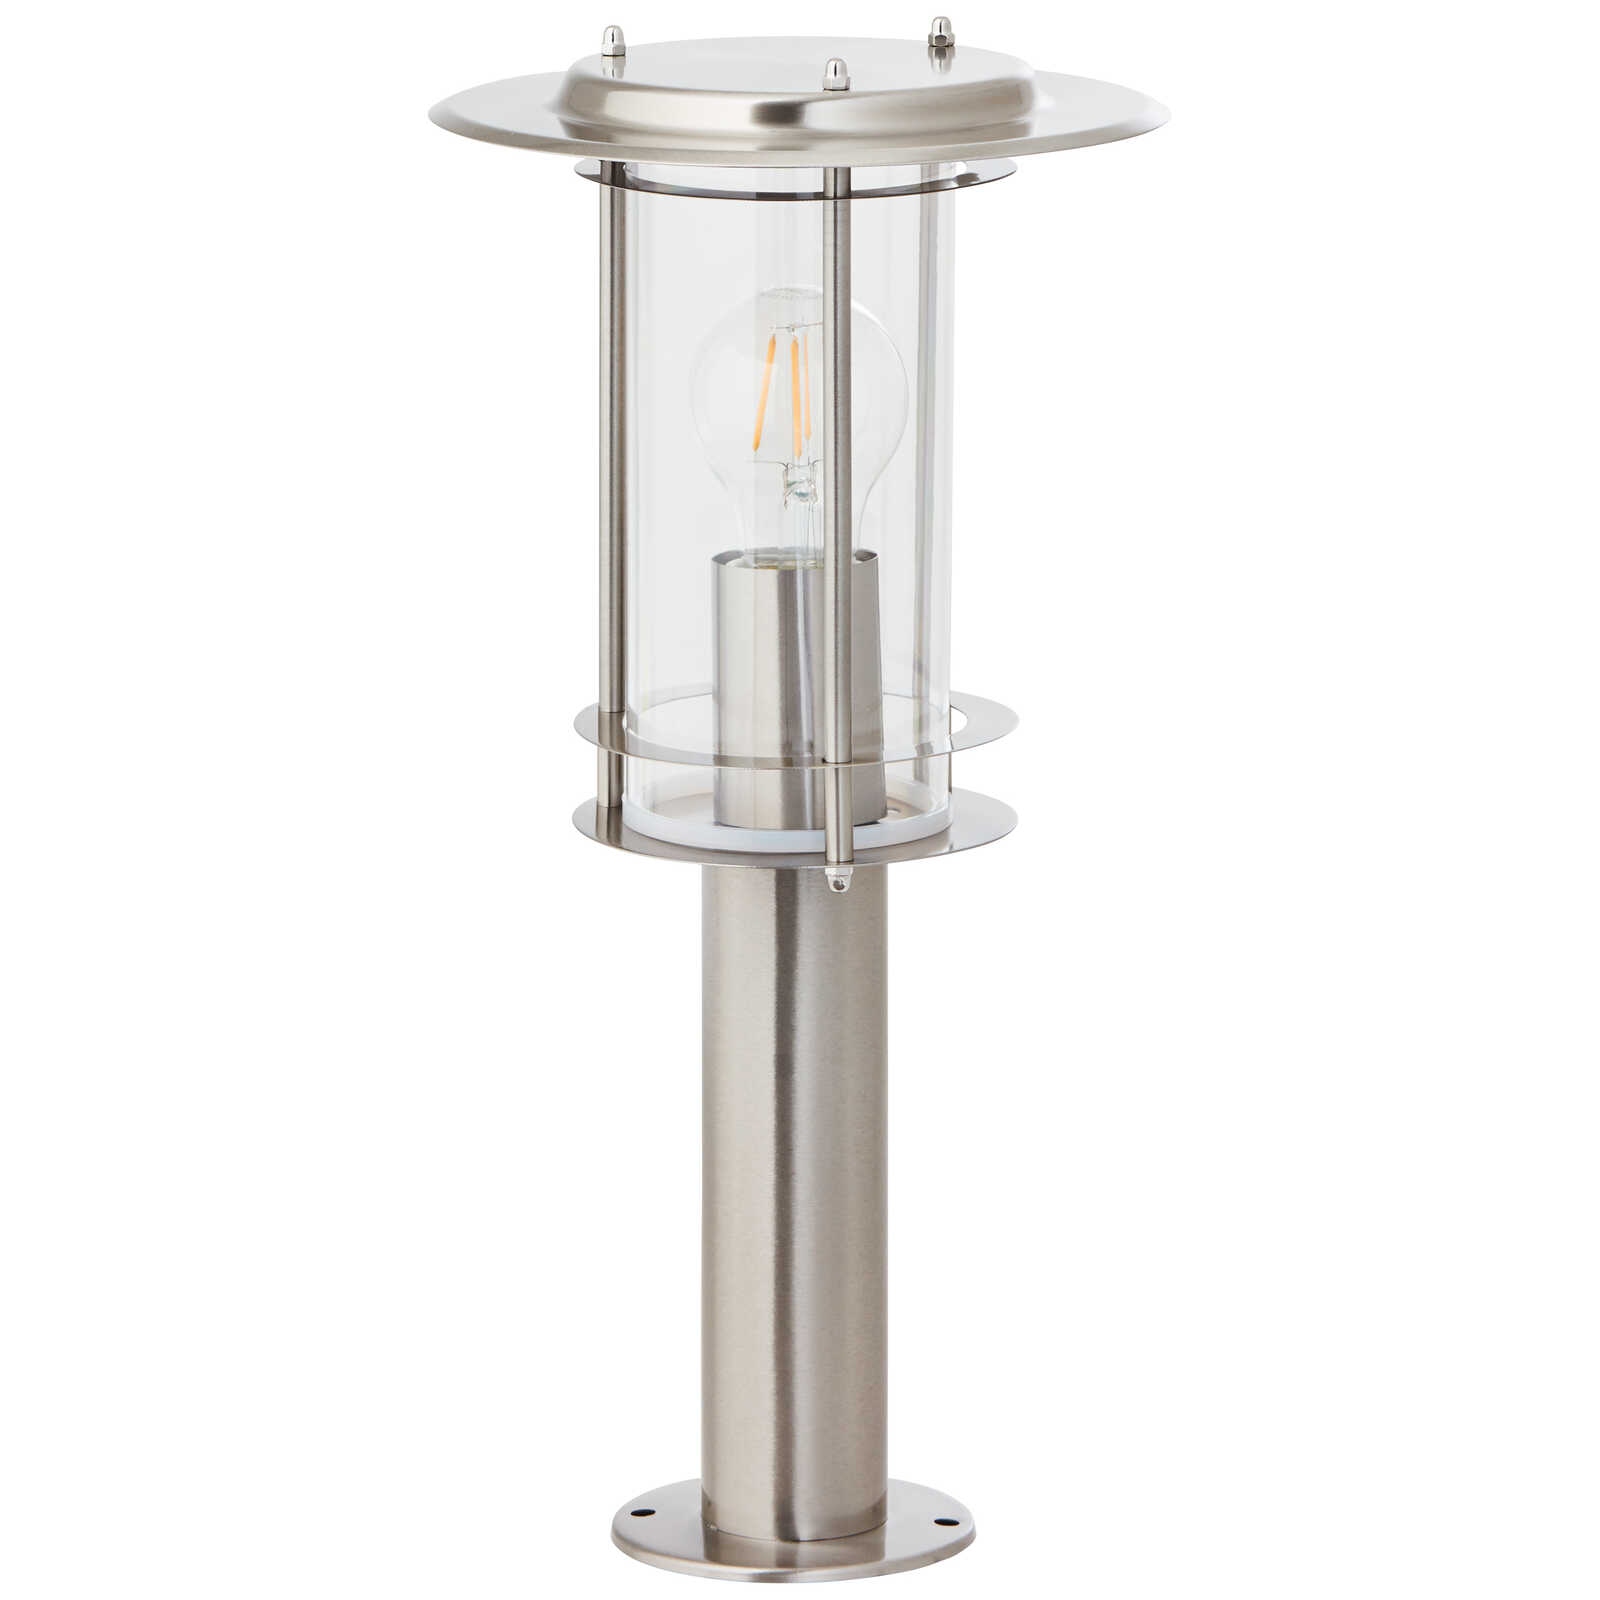             Metalen plintlamp - Wilma 5 - Zilver
        